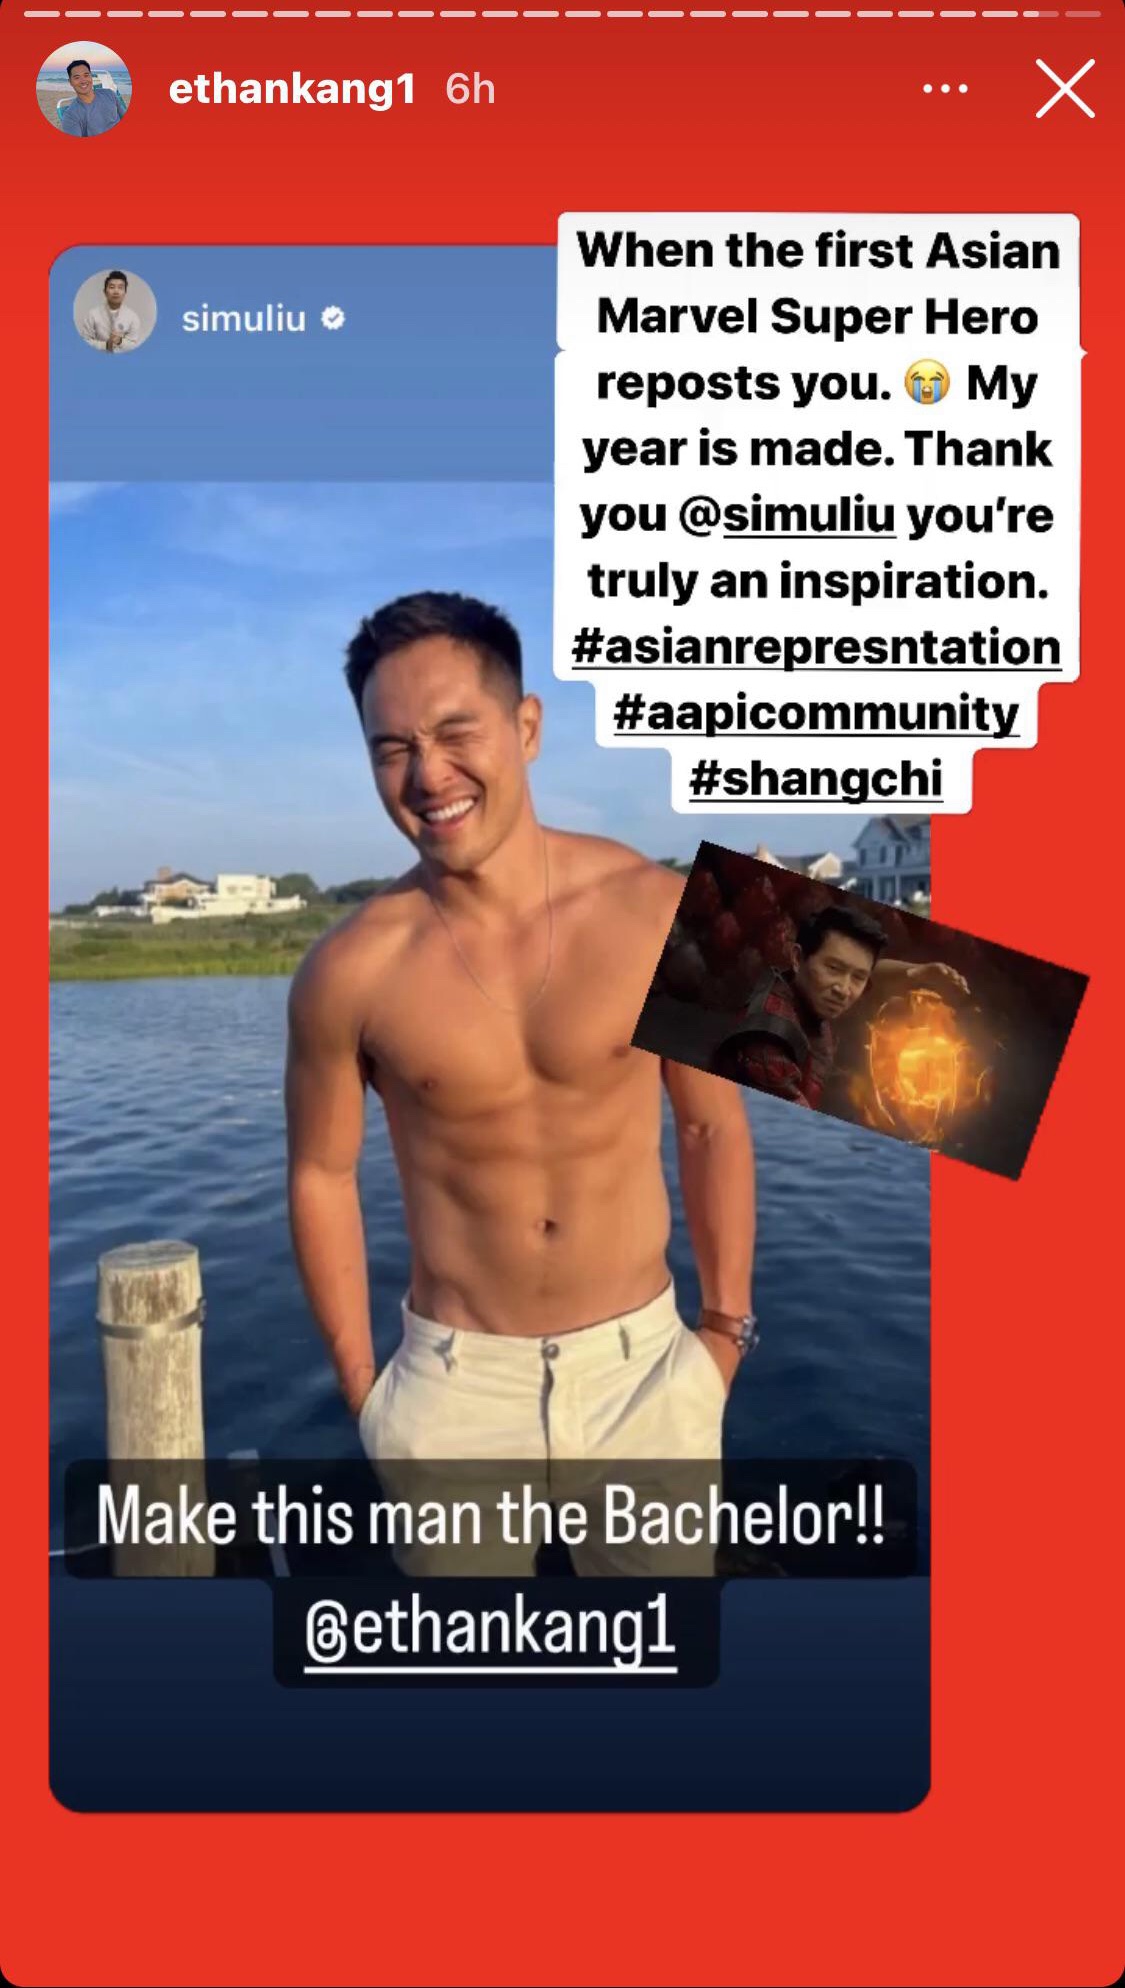 Simu Liu wants Ethan as the next Bachelor lead